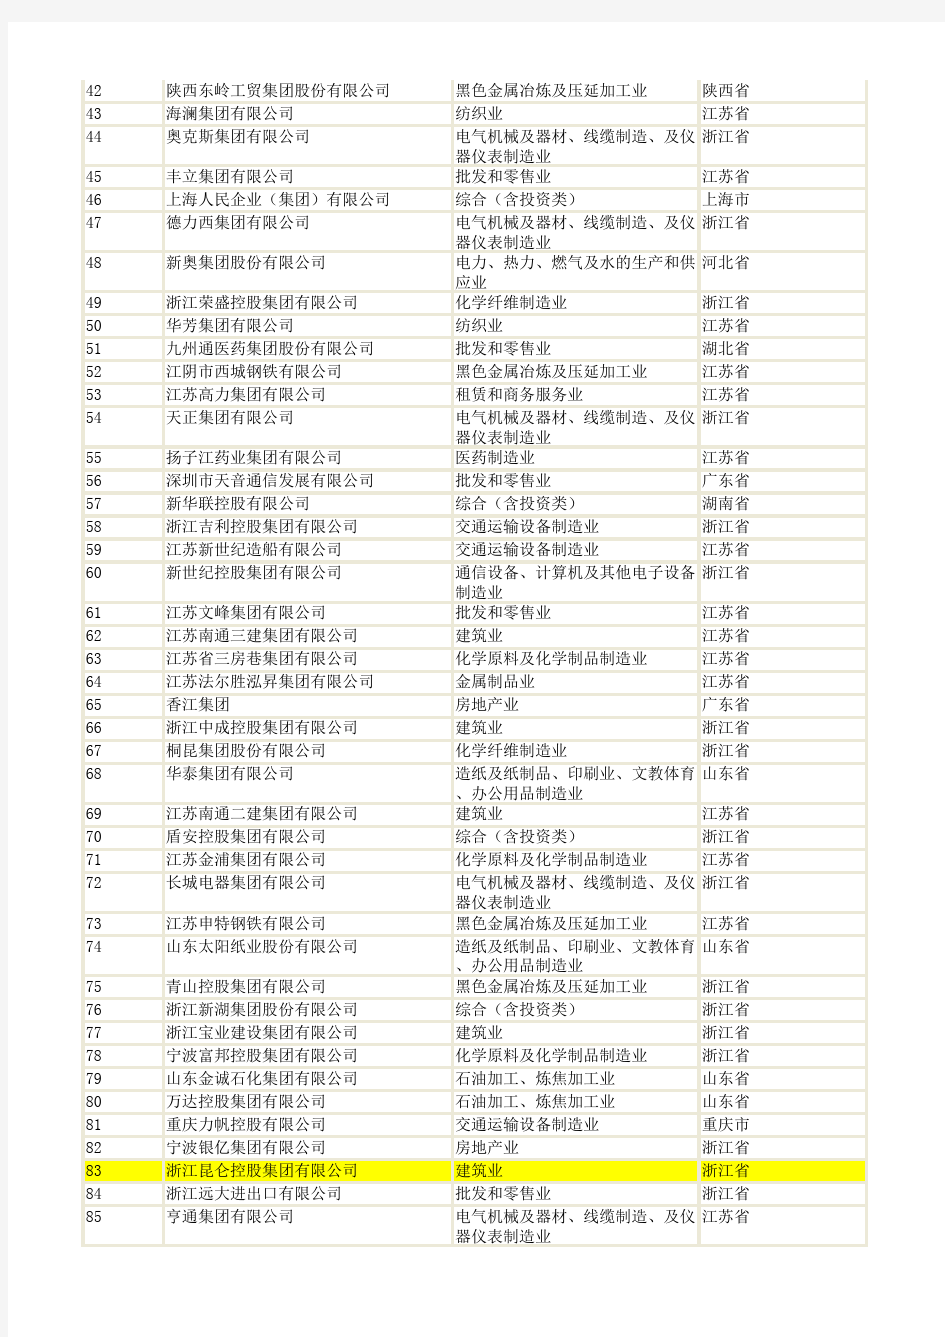 2010中国民营企业500强名单——(中华全国工商业联合会2010年8月29日发布)